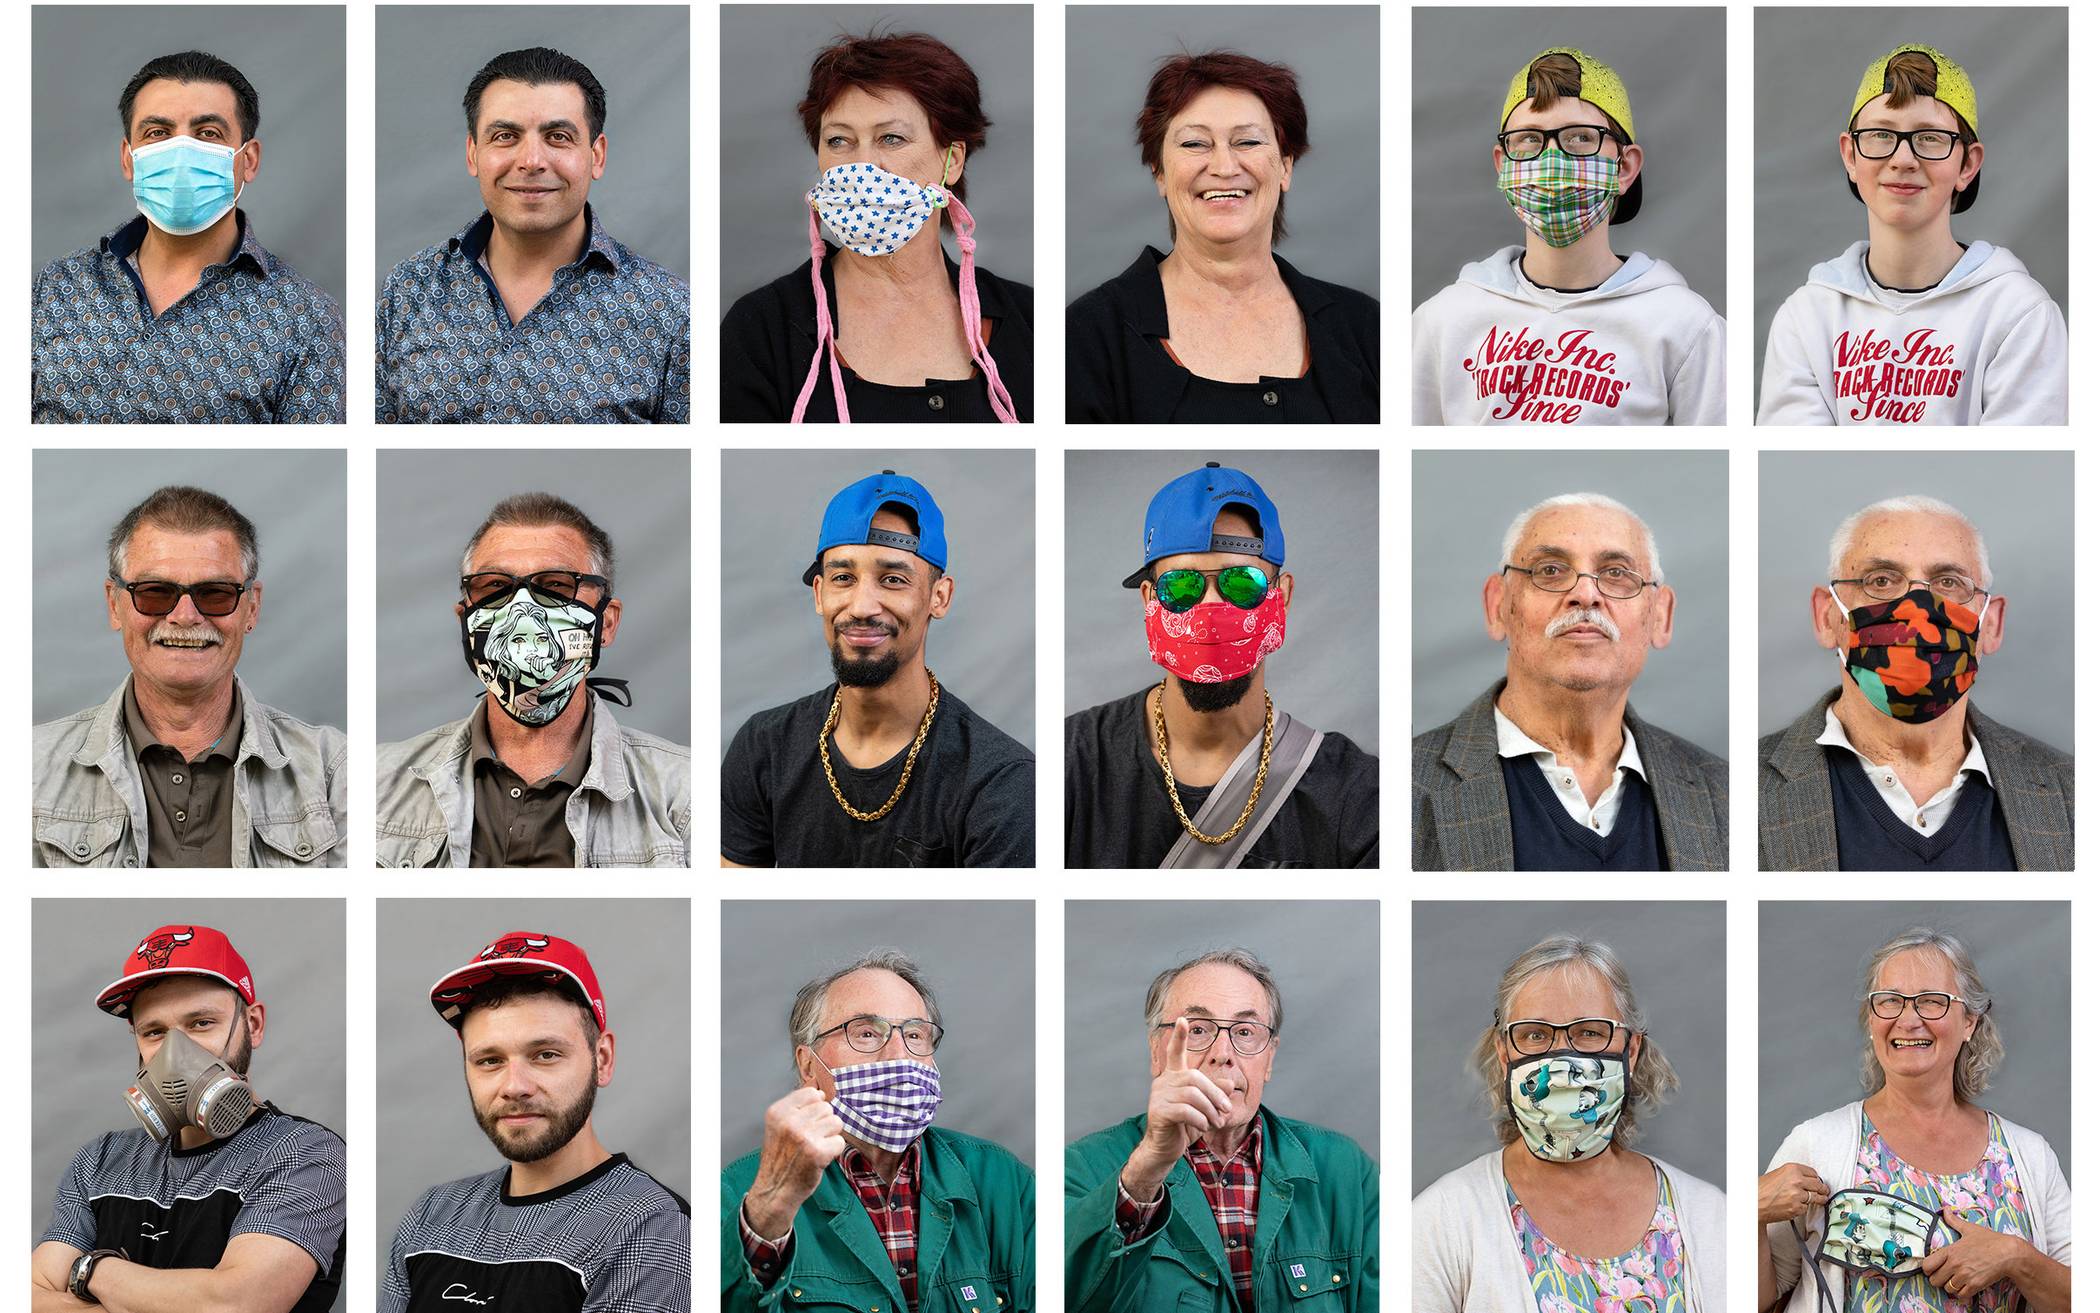  „Der maskierte Mensch“ - ein Fotoprojekt erkundet unsere „neue Normalität“ und blickt in die Gesichter hinter den Masken.  